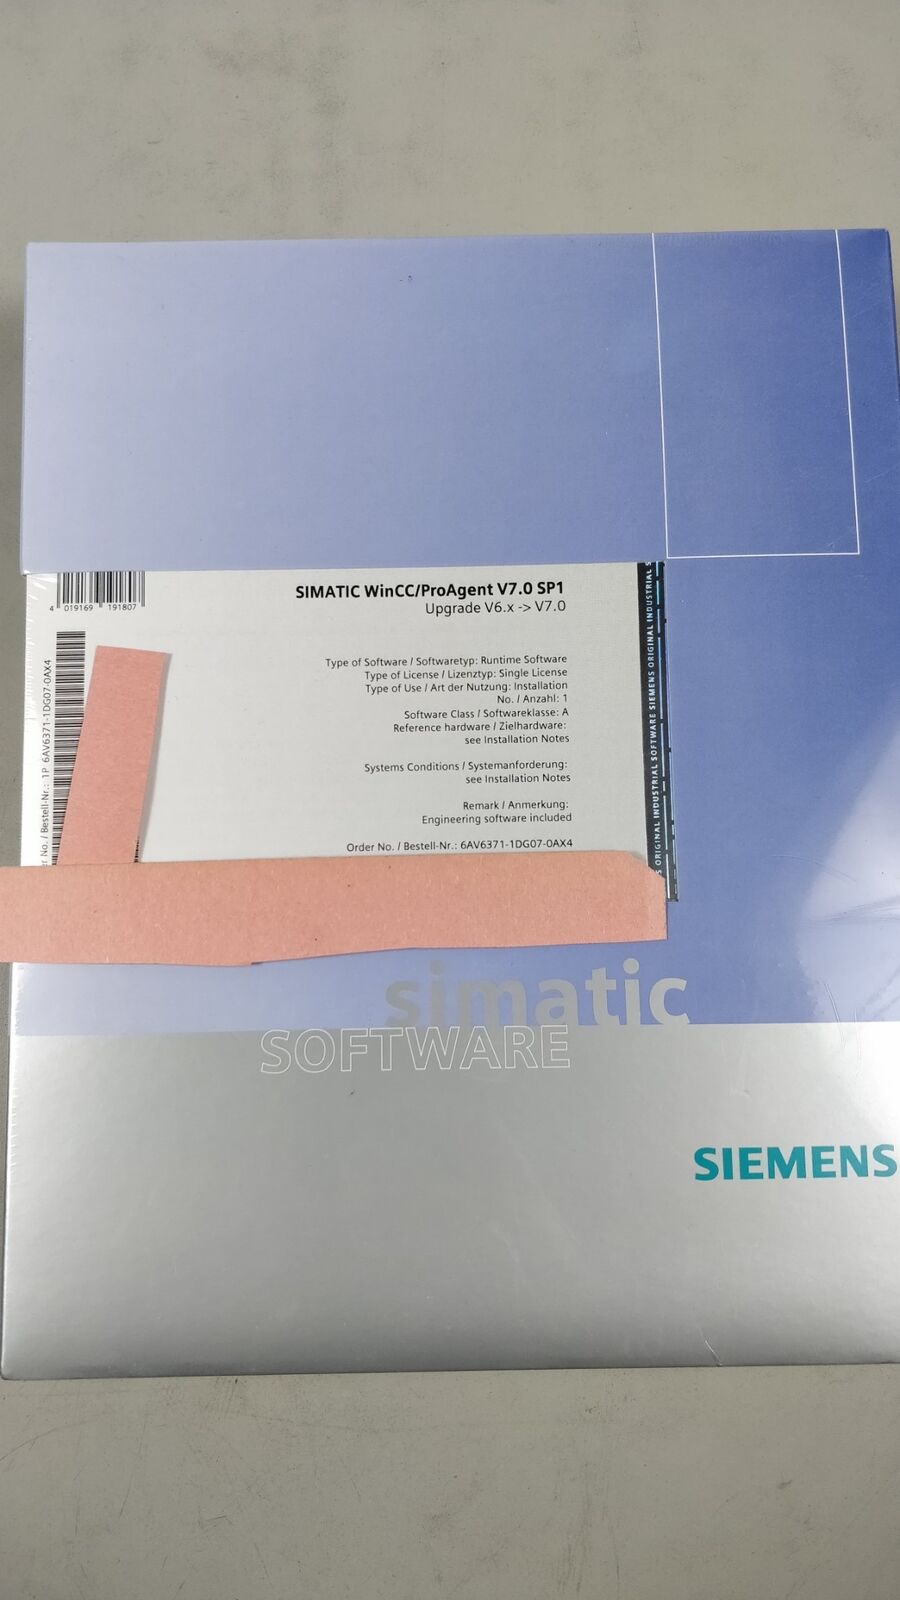 Siemens 6AV6371-1DG07-0AX4 SIMATIC WinCC / Pro Agent V7.0 SP1